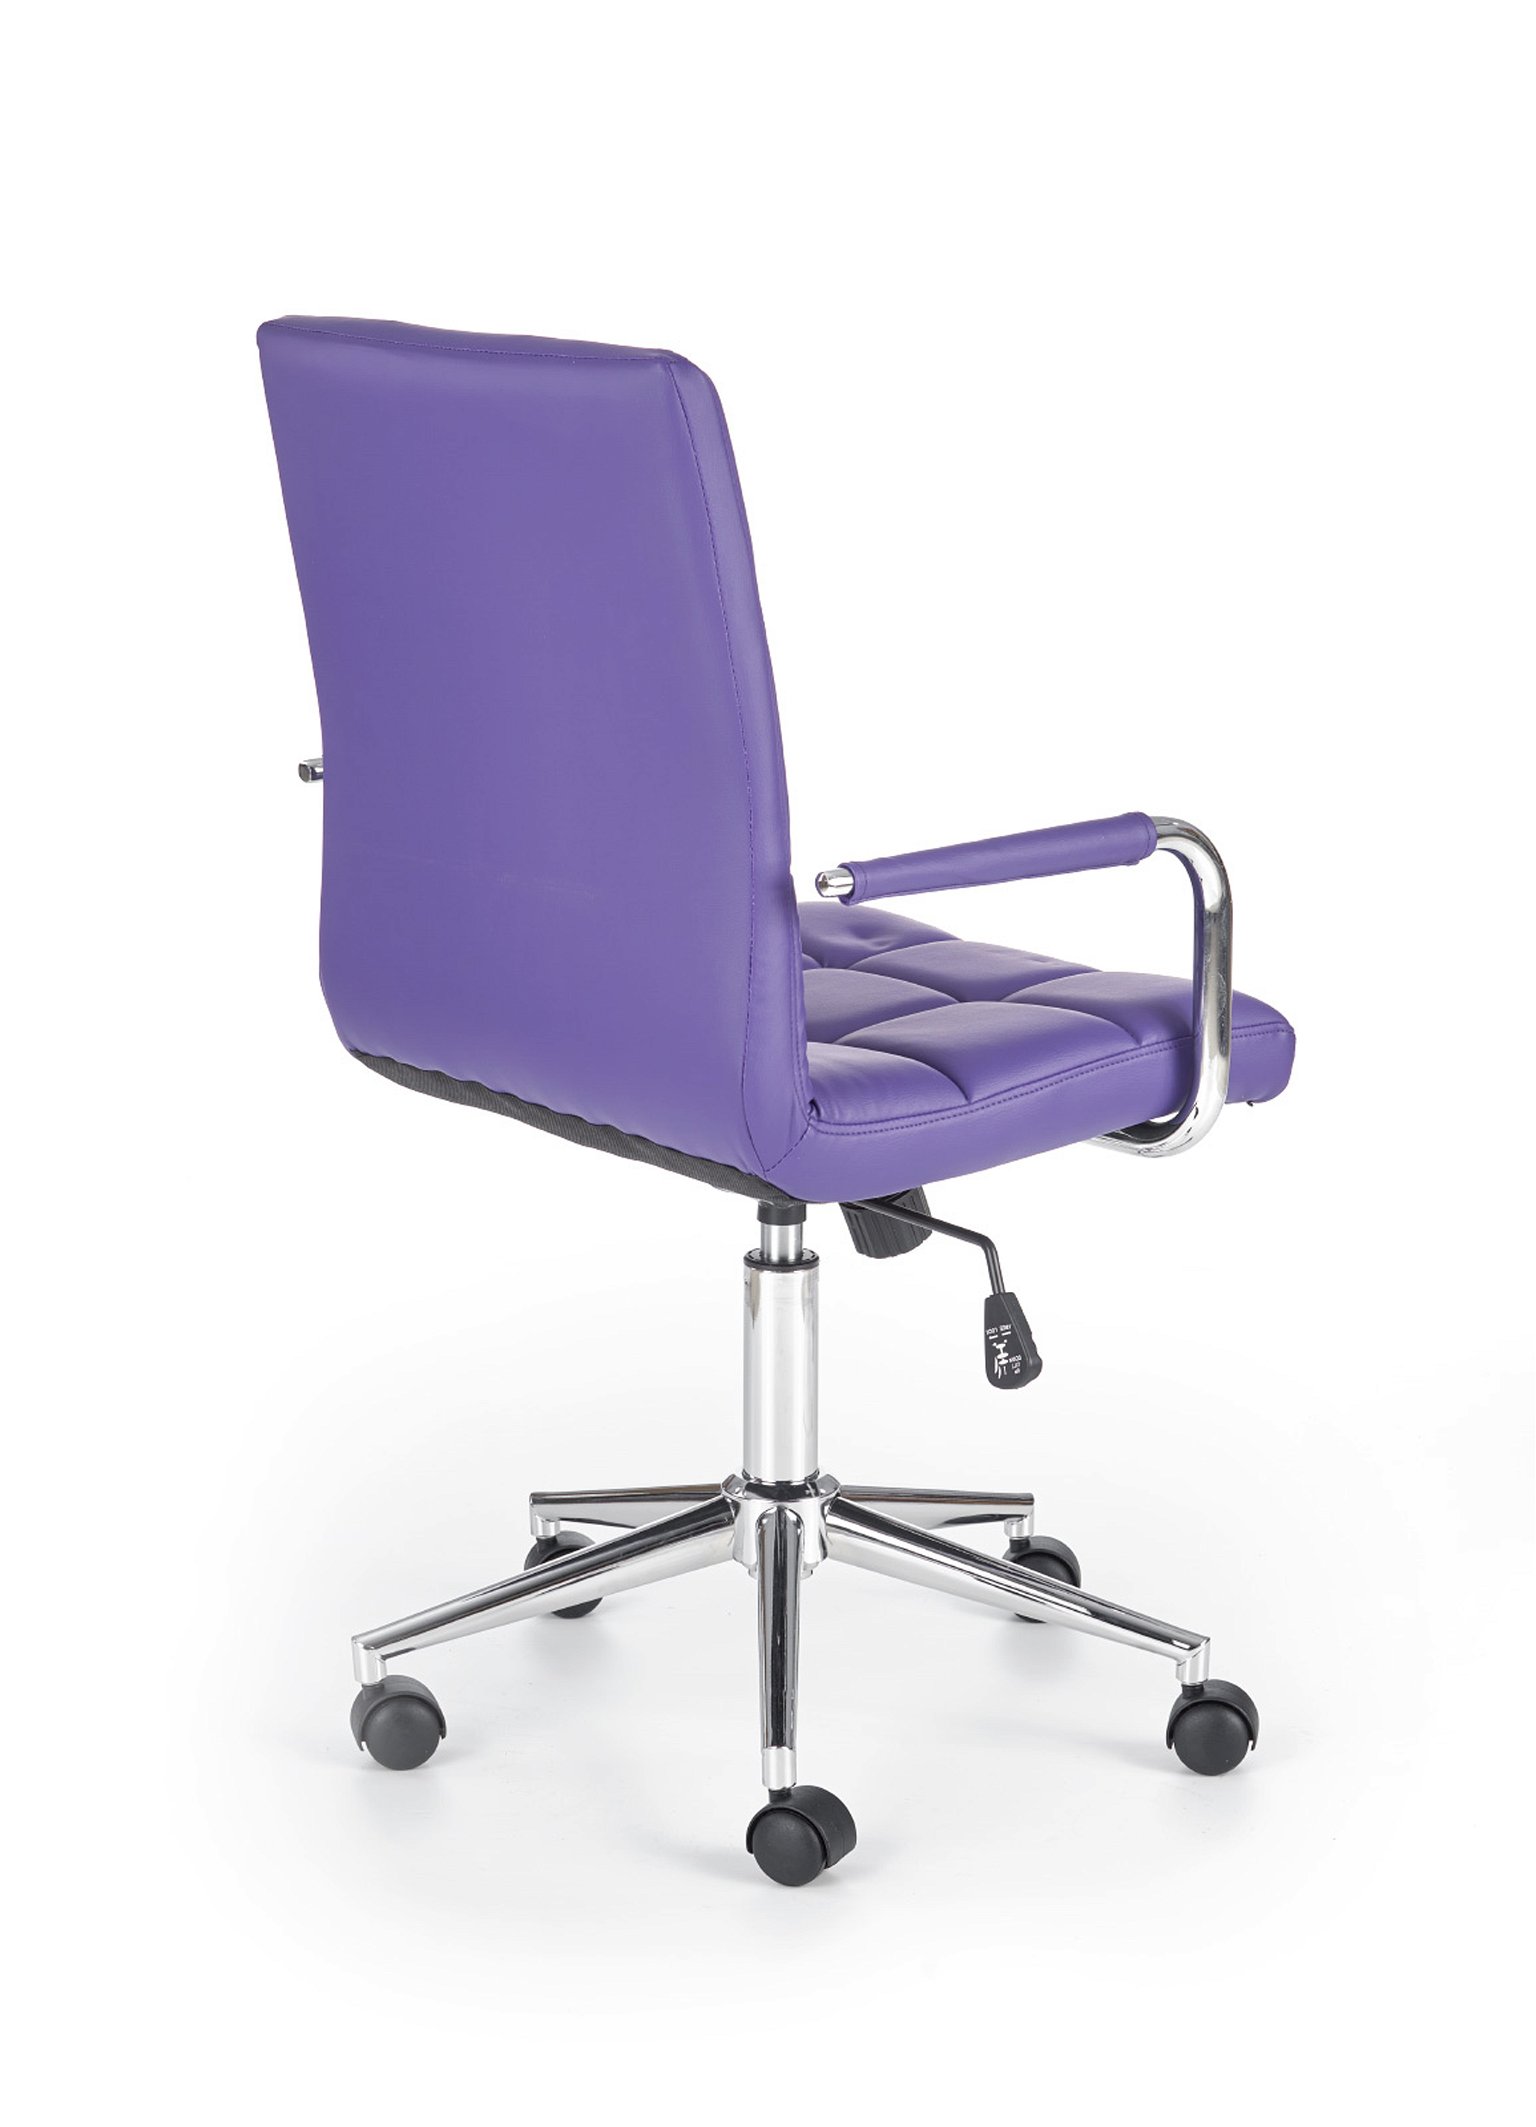 Vaikiška kėdė GONZO 2, violetinė - 2